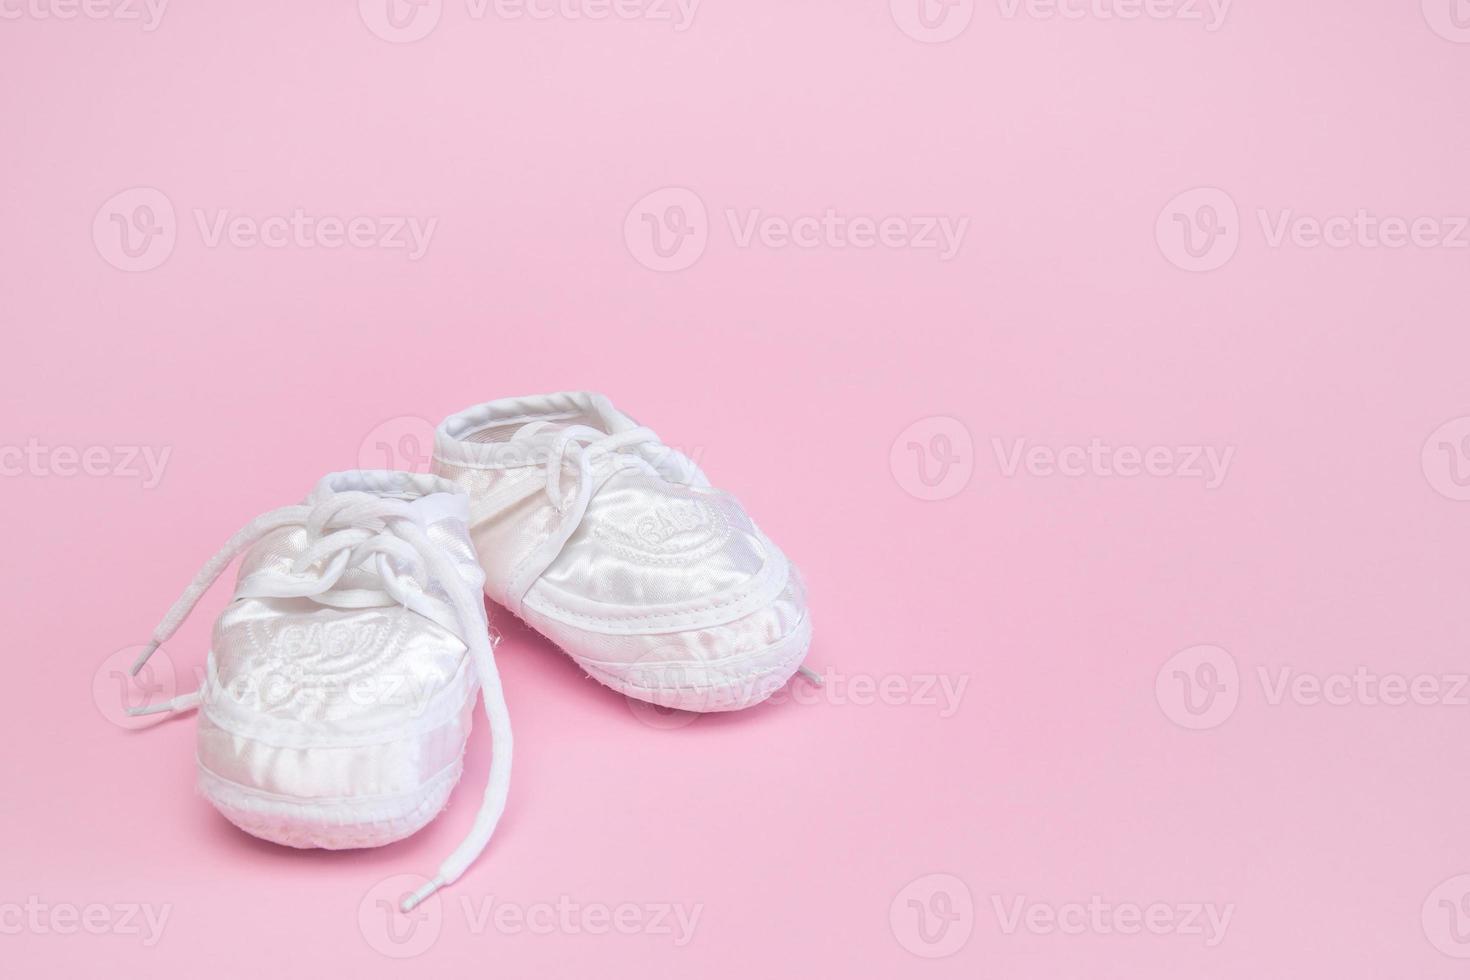 booties für ein neugeborenes auf einem rosa hintergrundkopienraum foto